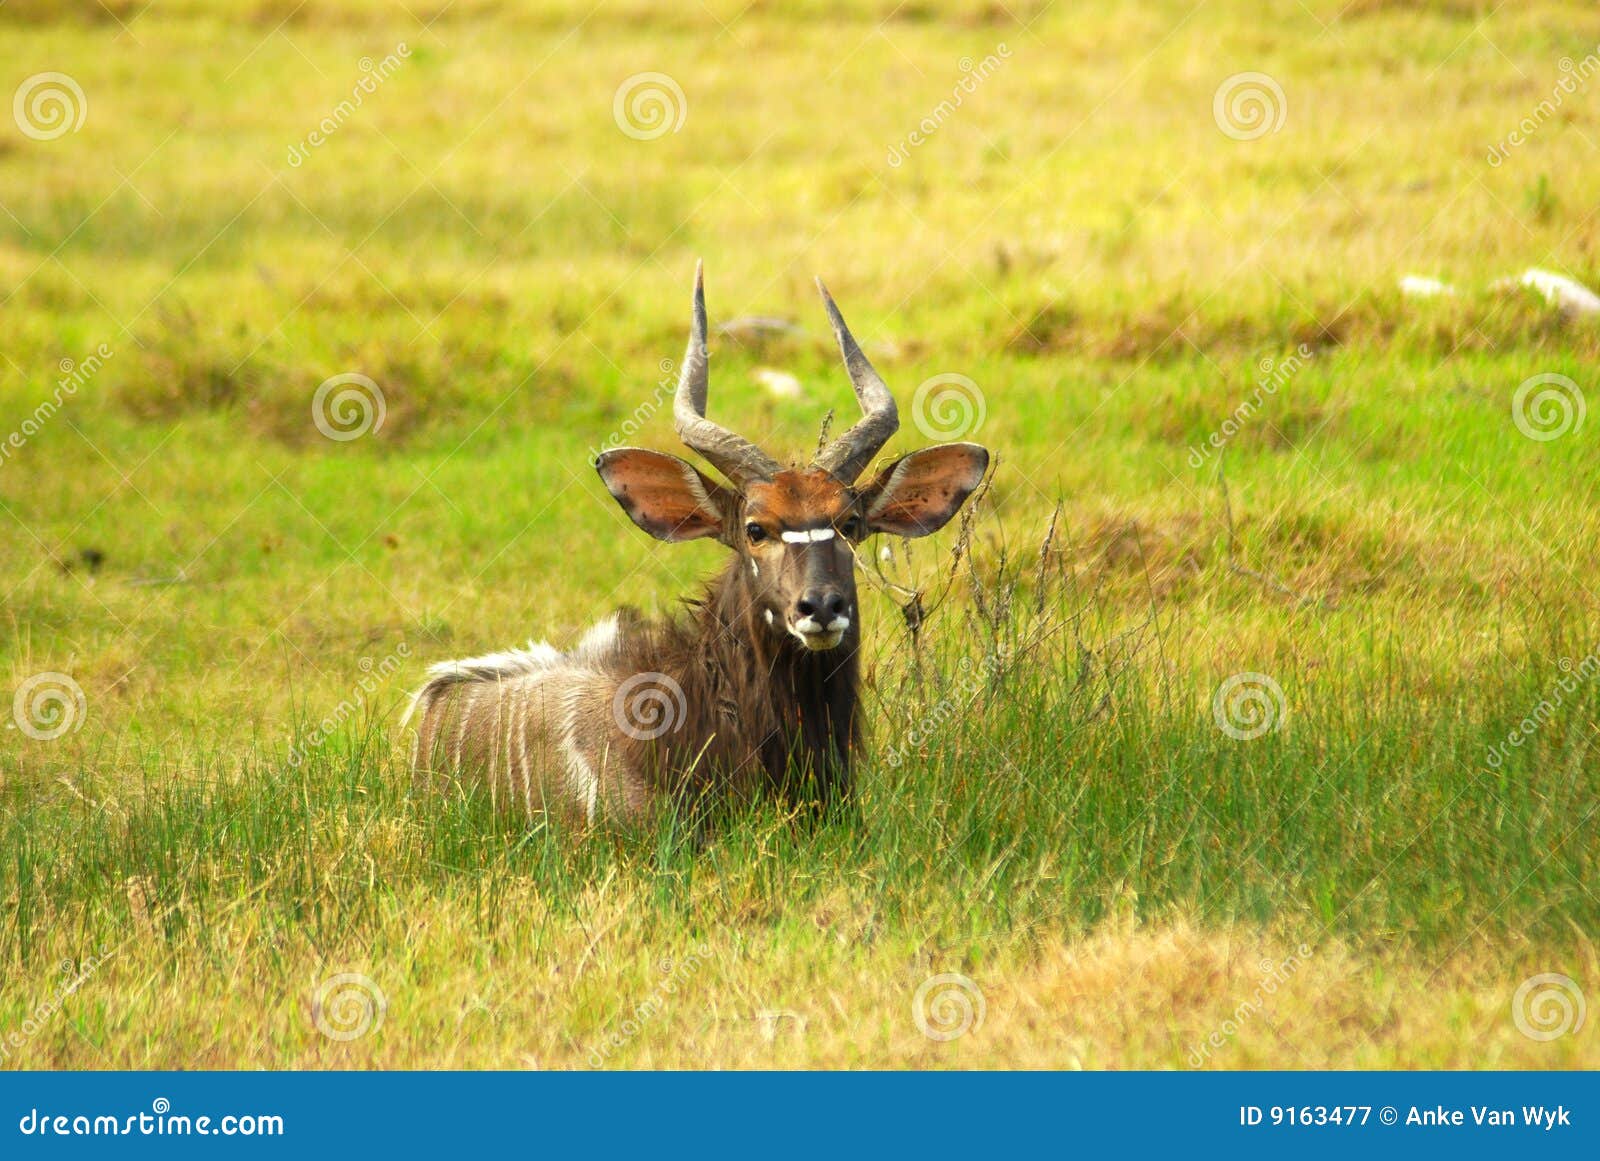 african antelope (nyala)